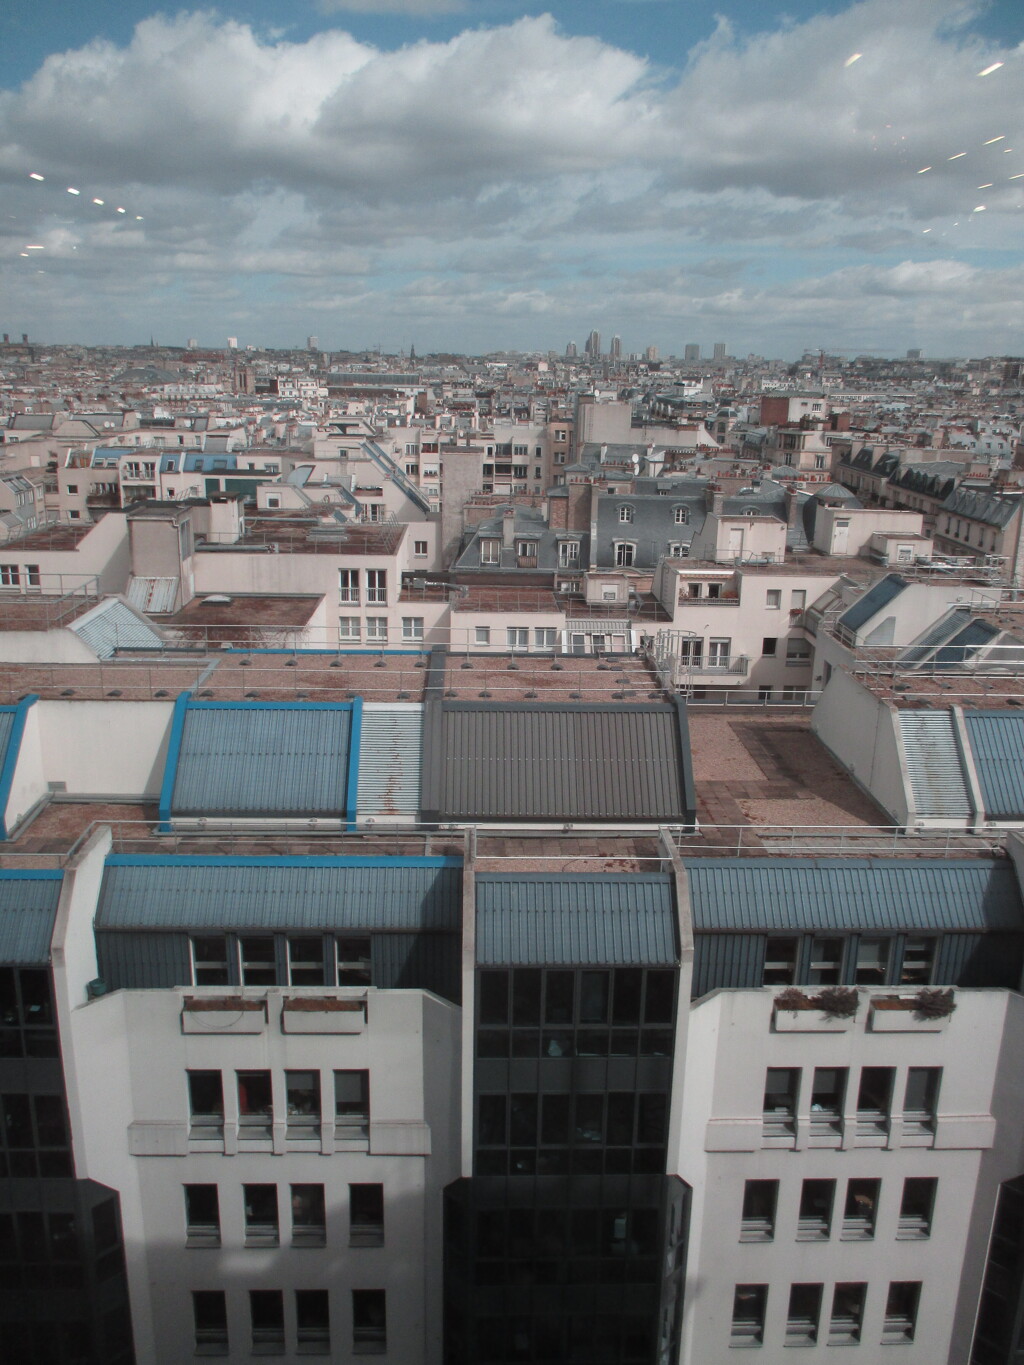 ポンピドゥセンターから見たパリ市街